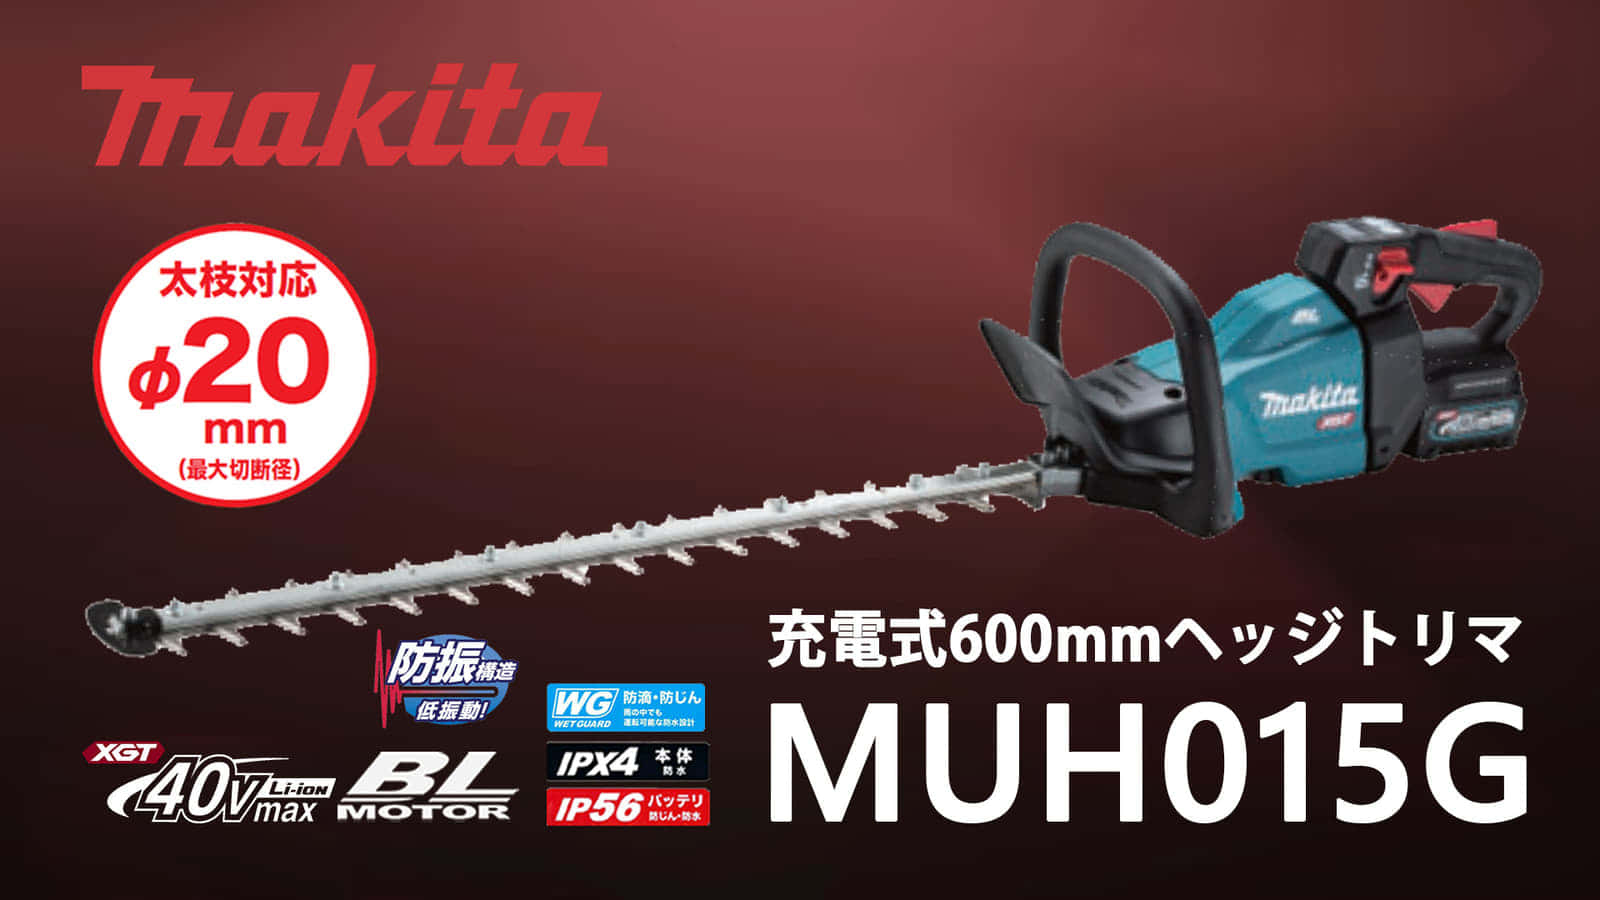 マキタ MUH015G 600mm充電式ヘッジトリマを発売、高トルク・厚刃の